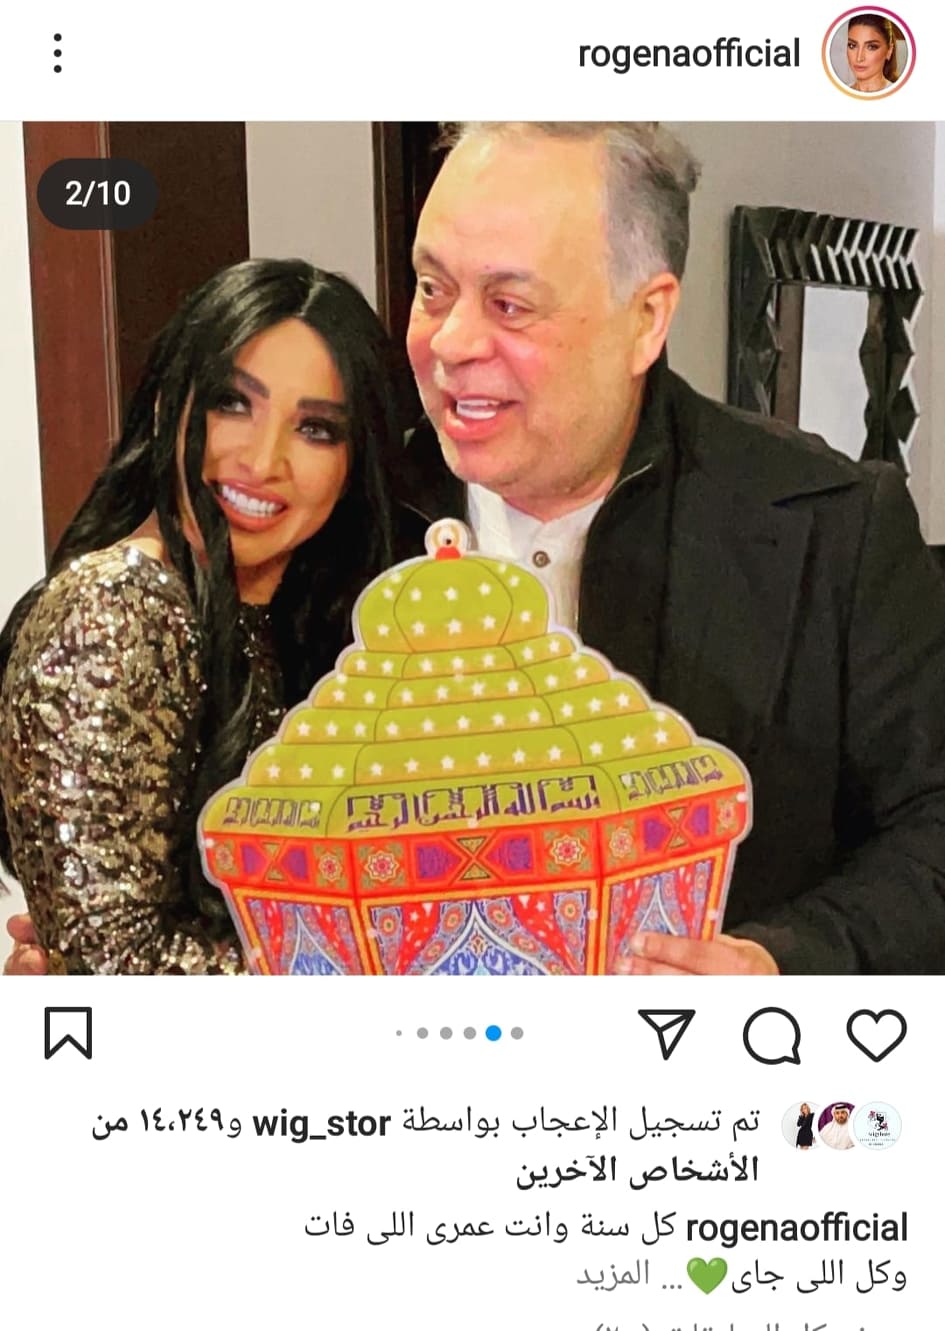 روجينا تحتفل بعيد ميلاد زوجها علي طريقتها الخاصة | صور - بوابة الأهرام